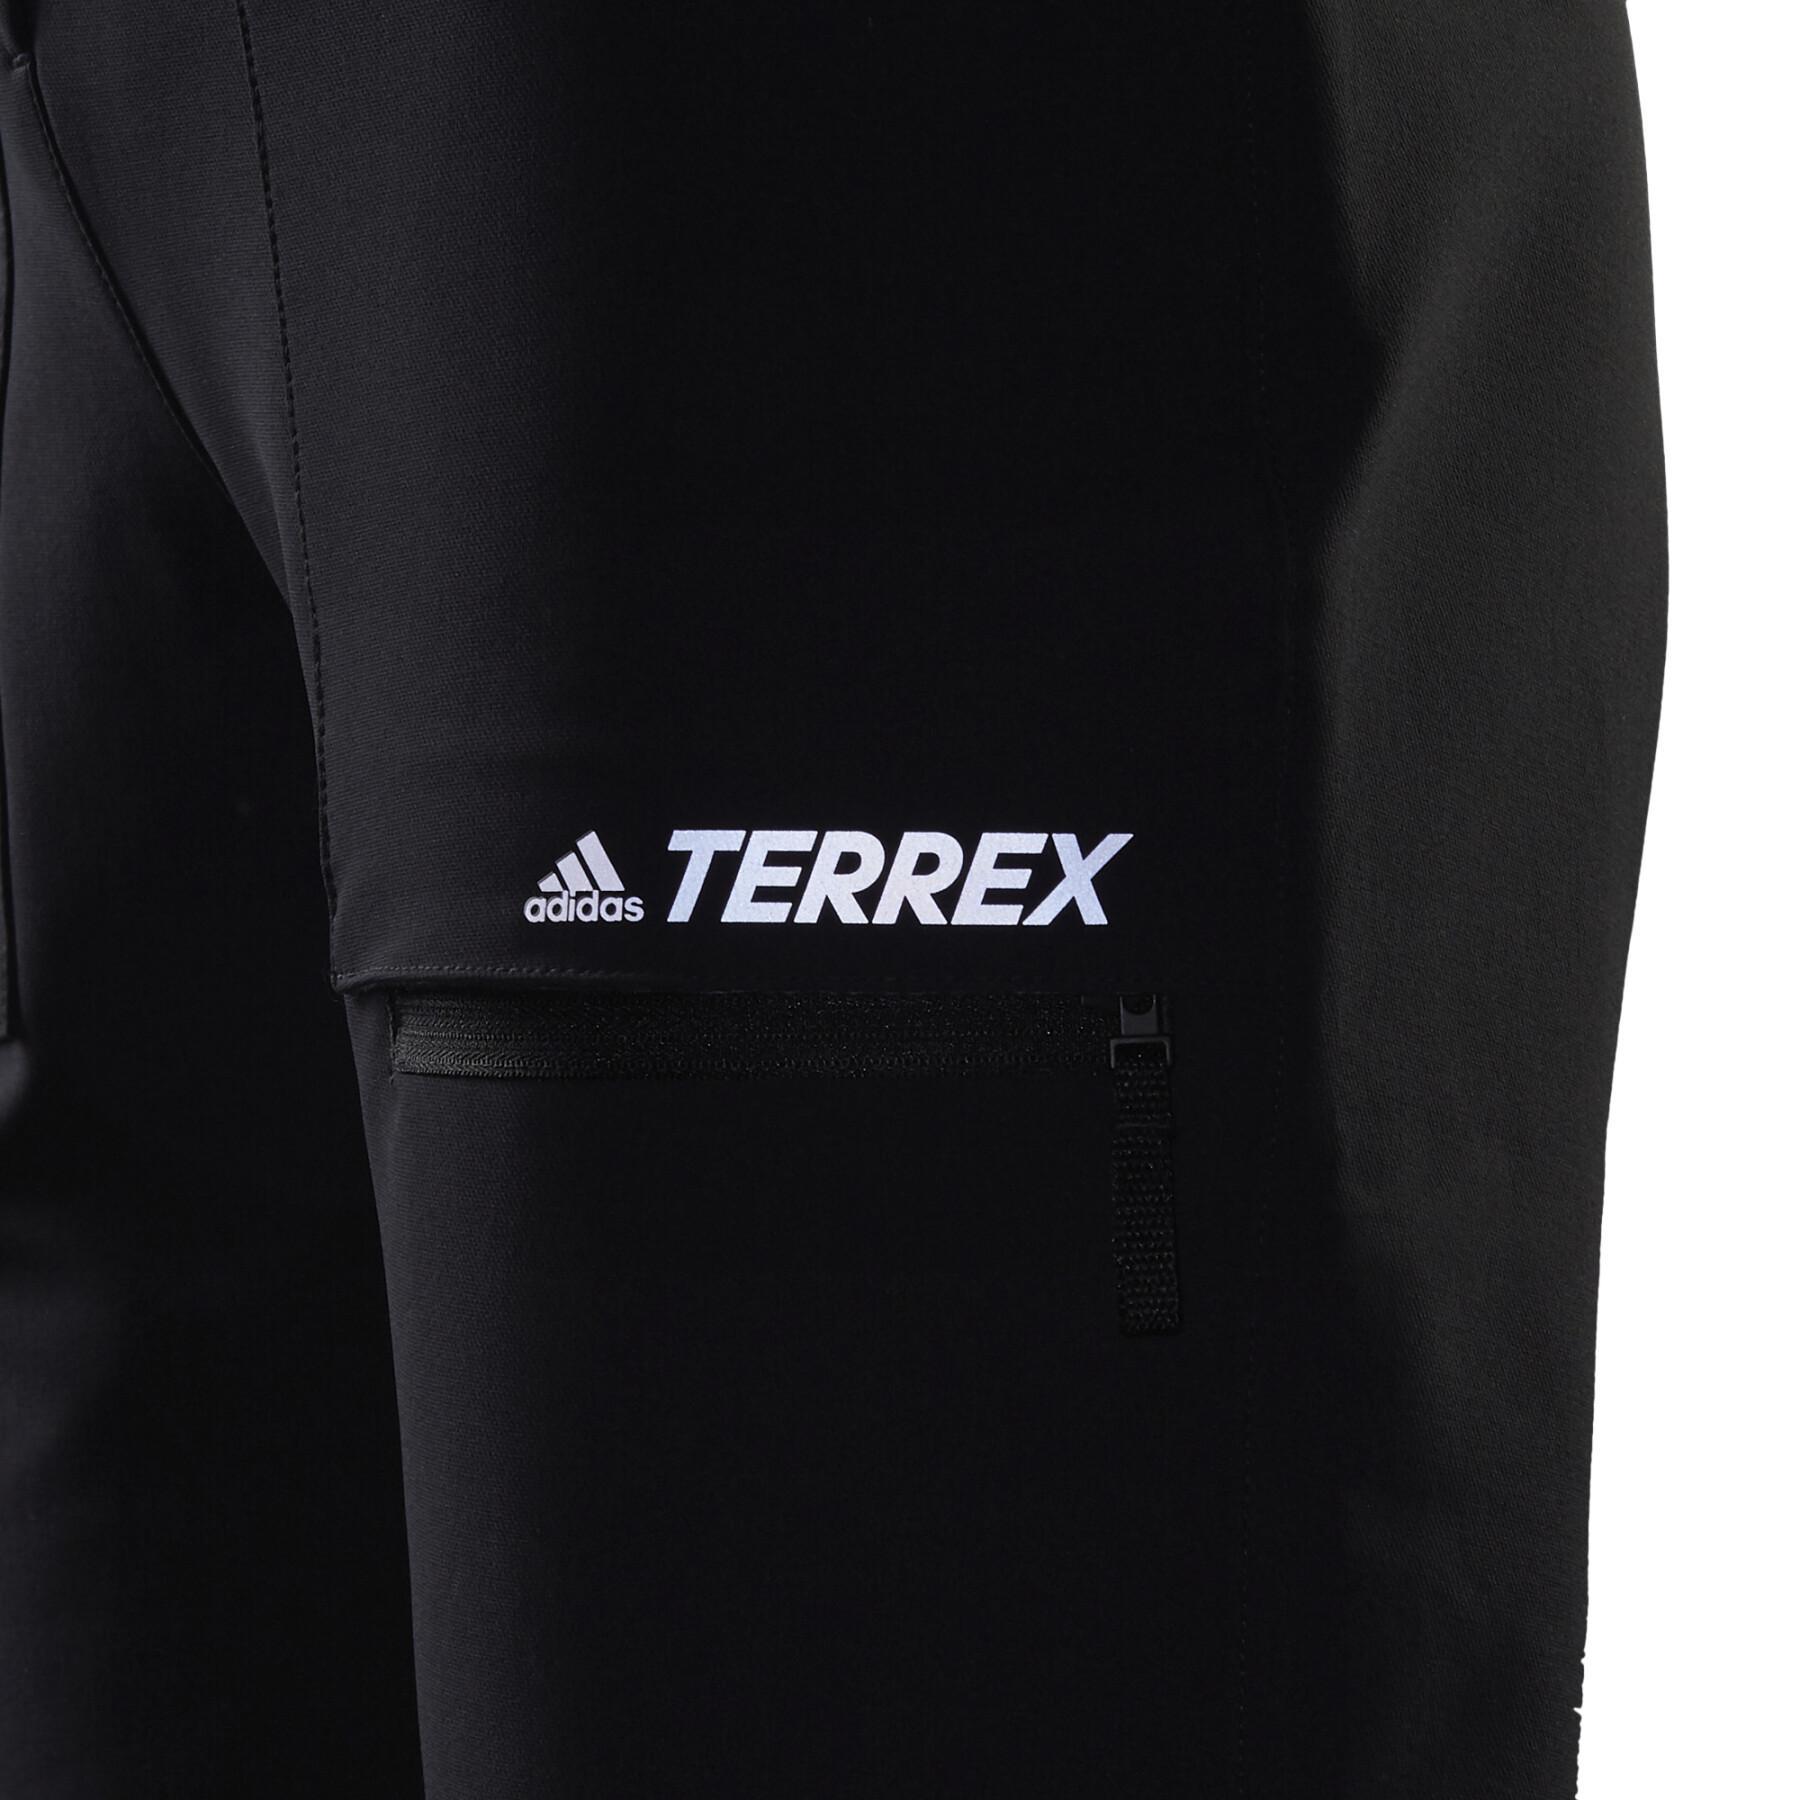 Women's trousers adidas Terrex Yearound Soft Shell